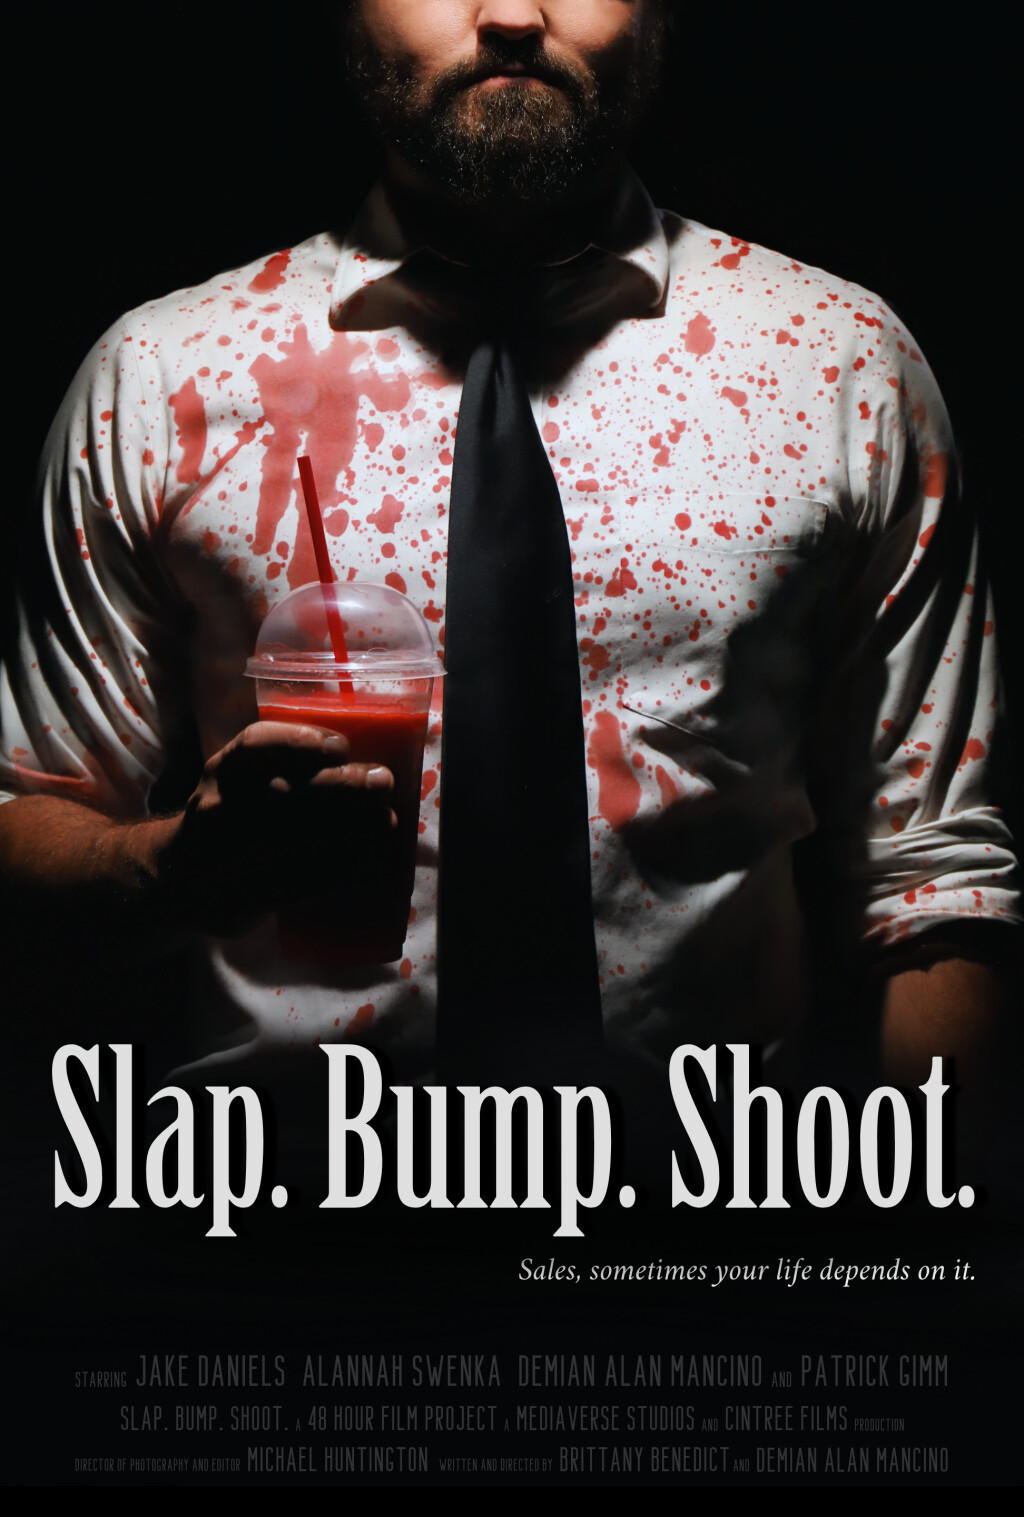 Filmposter for Slap. Bump. Shoot.